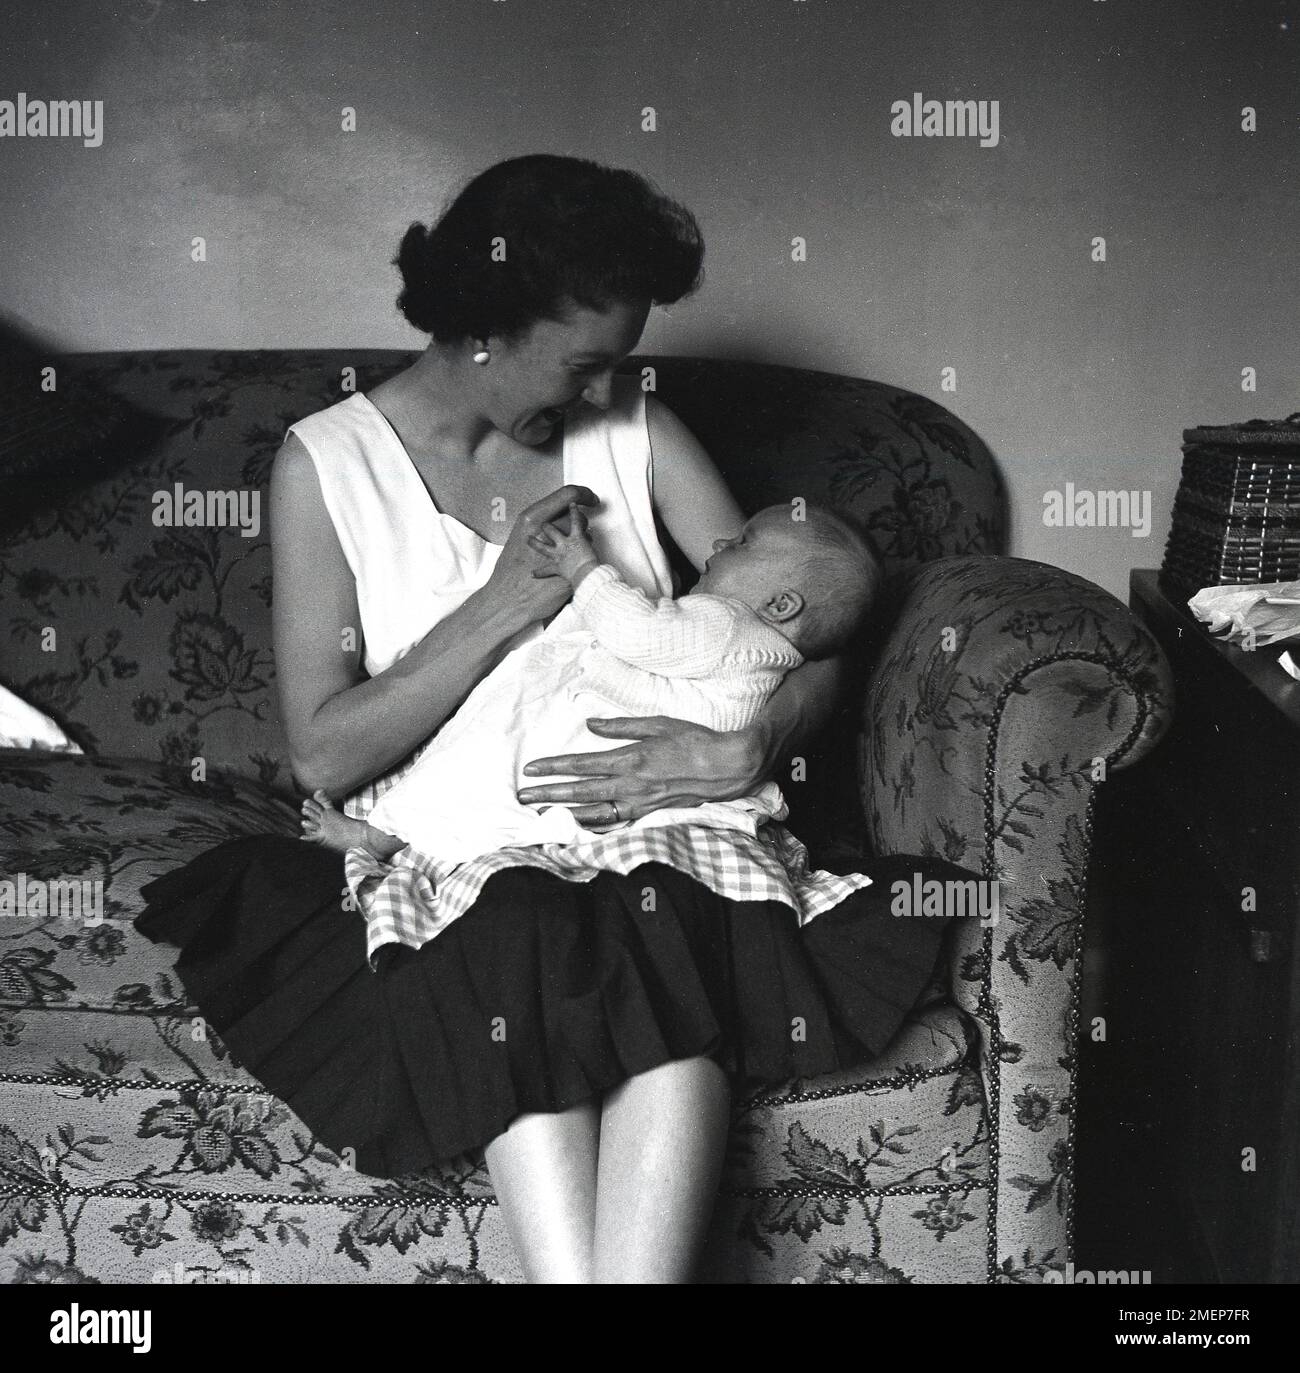 1950s, histórico, dentro de una habitación, una madre sentada en un sofá acunando a su nuevo hijo en su regazo e interactuando con él, mirándolo a los ojos, Inglaterra, Reino Unido. Foto de stock